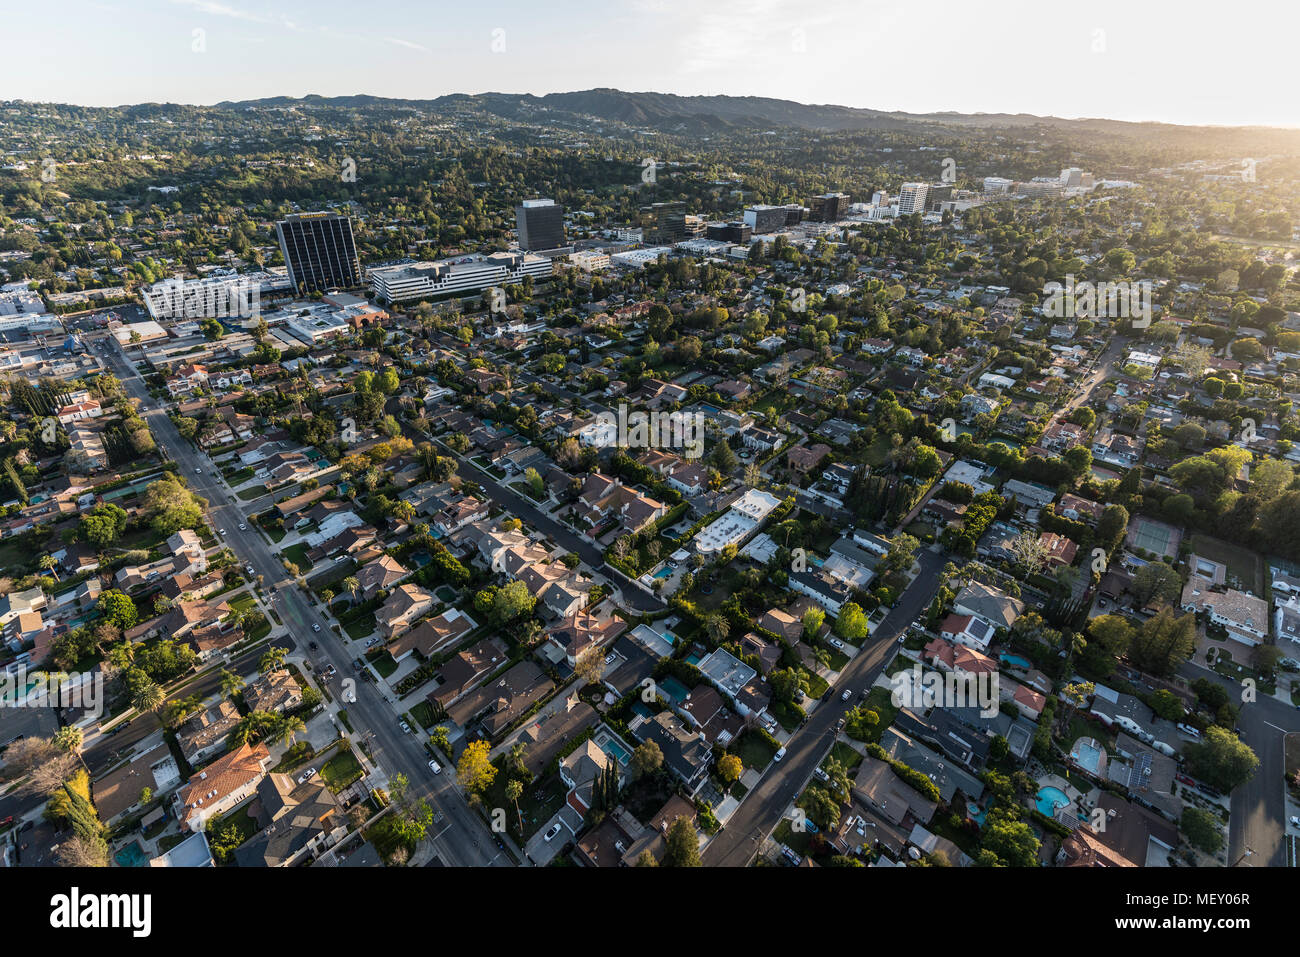 Los Angeles, Californie, USA - 18 Avril 2018 : Après-midi vue aérienne de Sherman Oaks et Encino dans la vallée de San Fernando. Banque D'Images